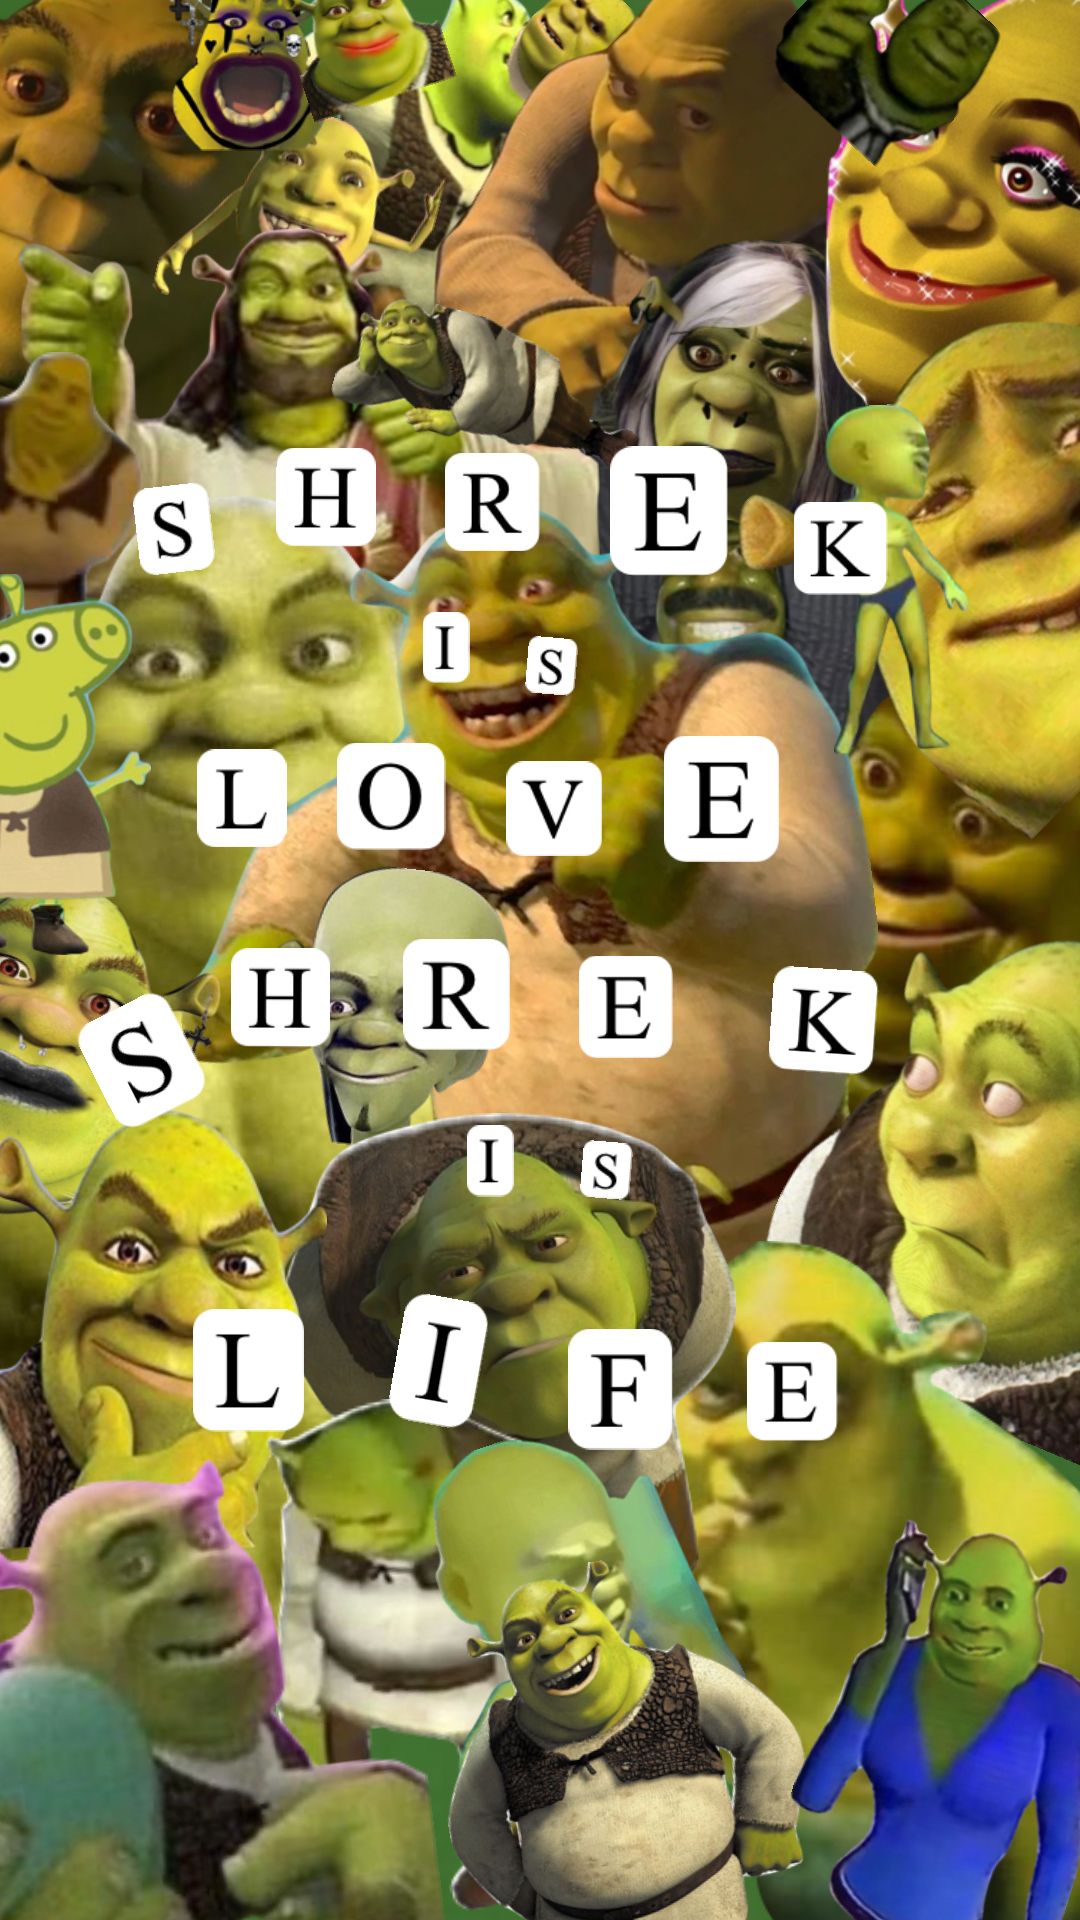 Shrek is love, shrek is life. - Shrek